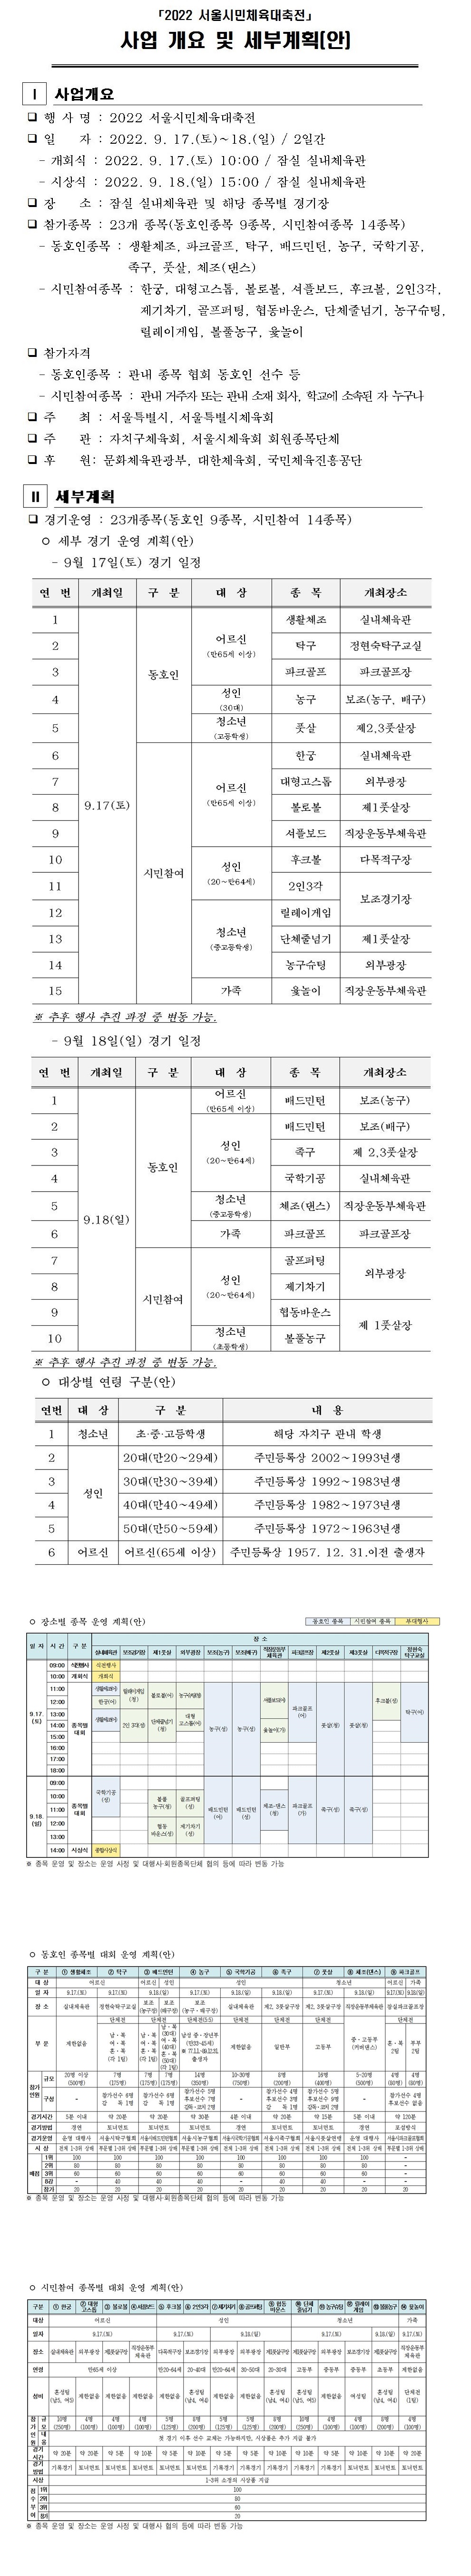 서울시민체육대축전 사업개요 및 세부 계획(안)001-vert.jpg